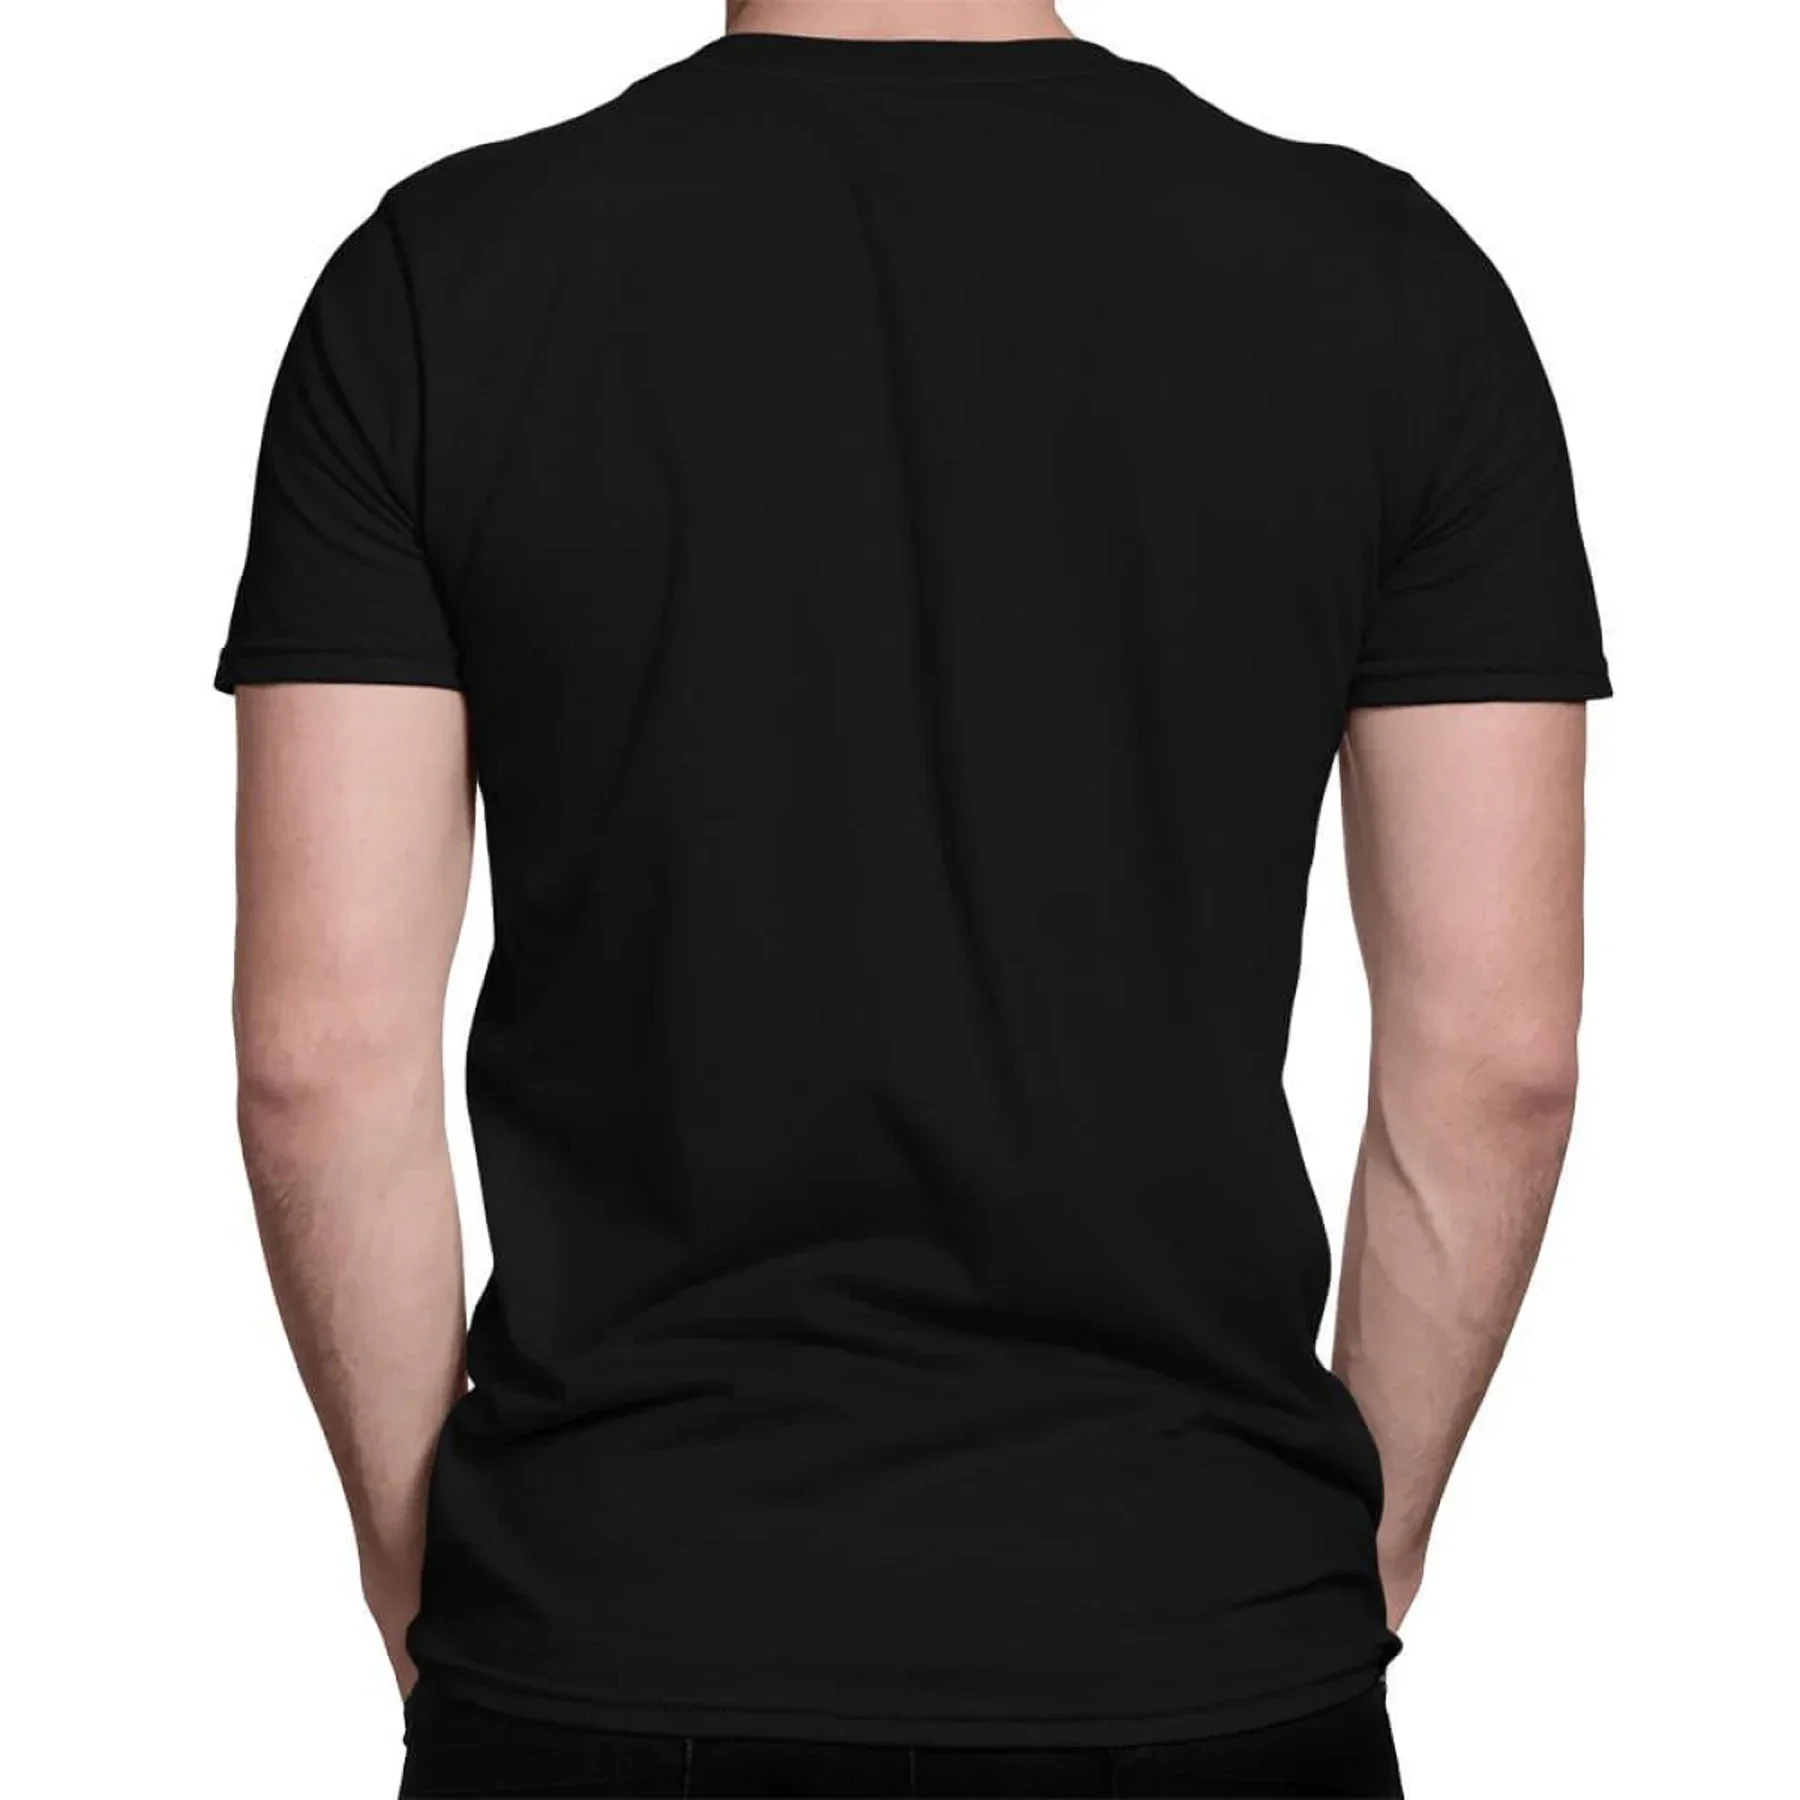 Incrível Masculino Camiseta Casual de grandes dimensões Orville Peck Bronco Tour 2022 Nova T-shirt Essencial Homens T-shirts Gráfico Streetwear S-3XL